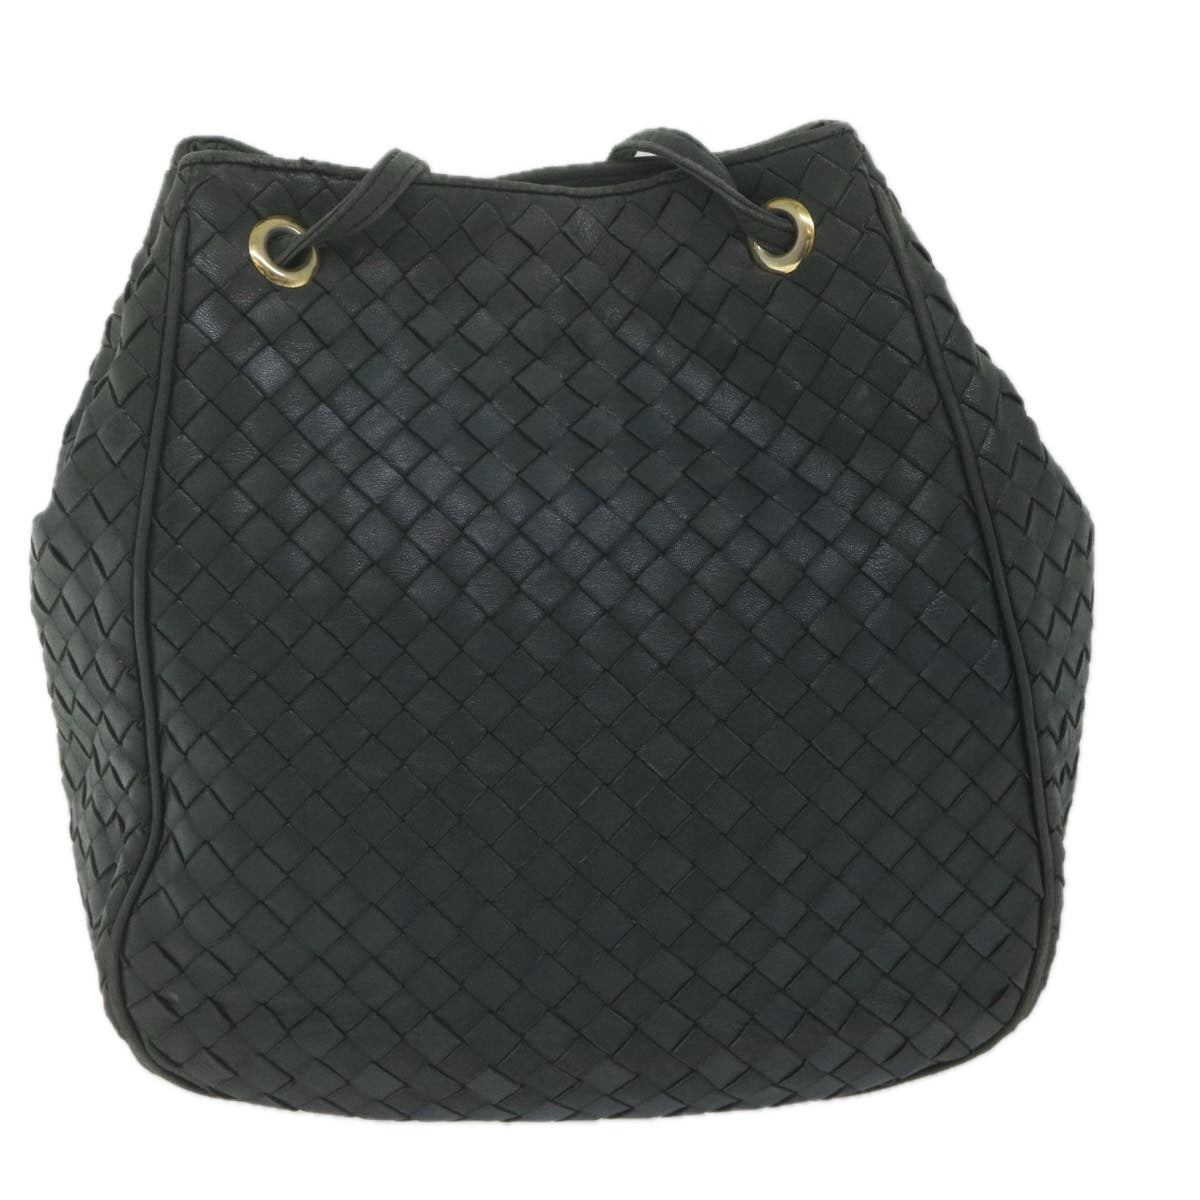 BOTTEGAVENETA INTRECCIATO Shoulder Bag Leather Black Auth 62130 - 0